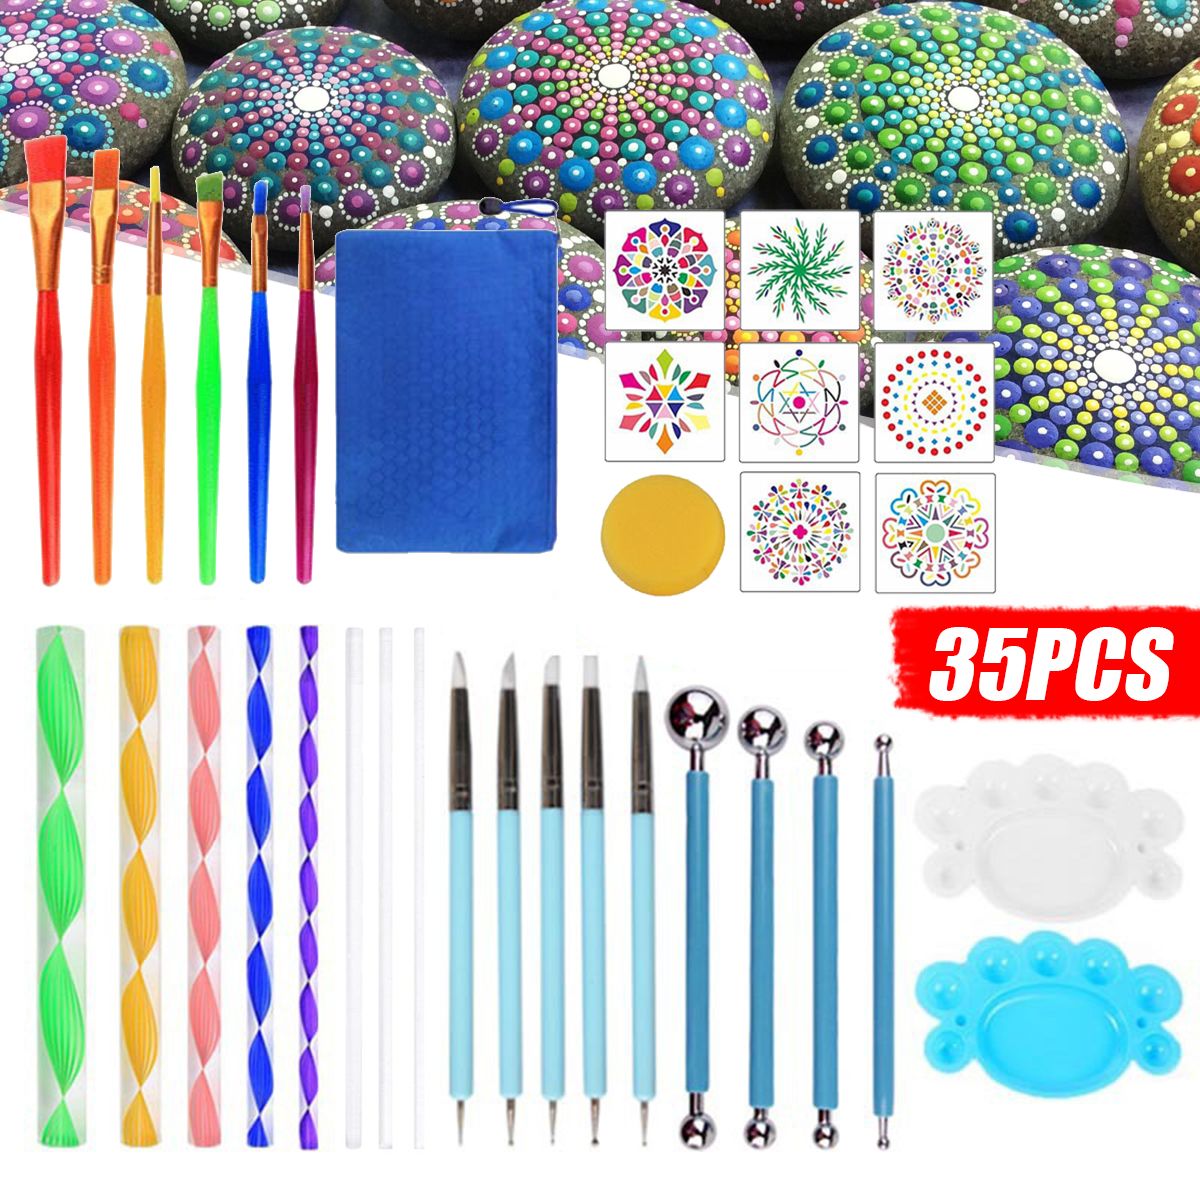 35PCS-Pottery-Mandala-Dotting-Tool-Set-Rock-Stone-Dot-Art-Painting-Paint-Stencil-Tools-Kit-1713391